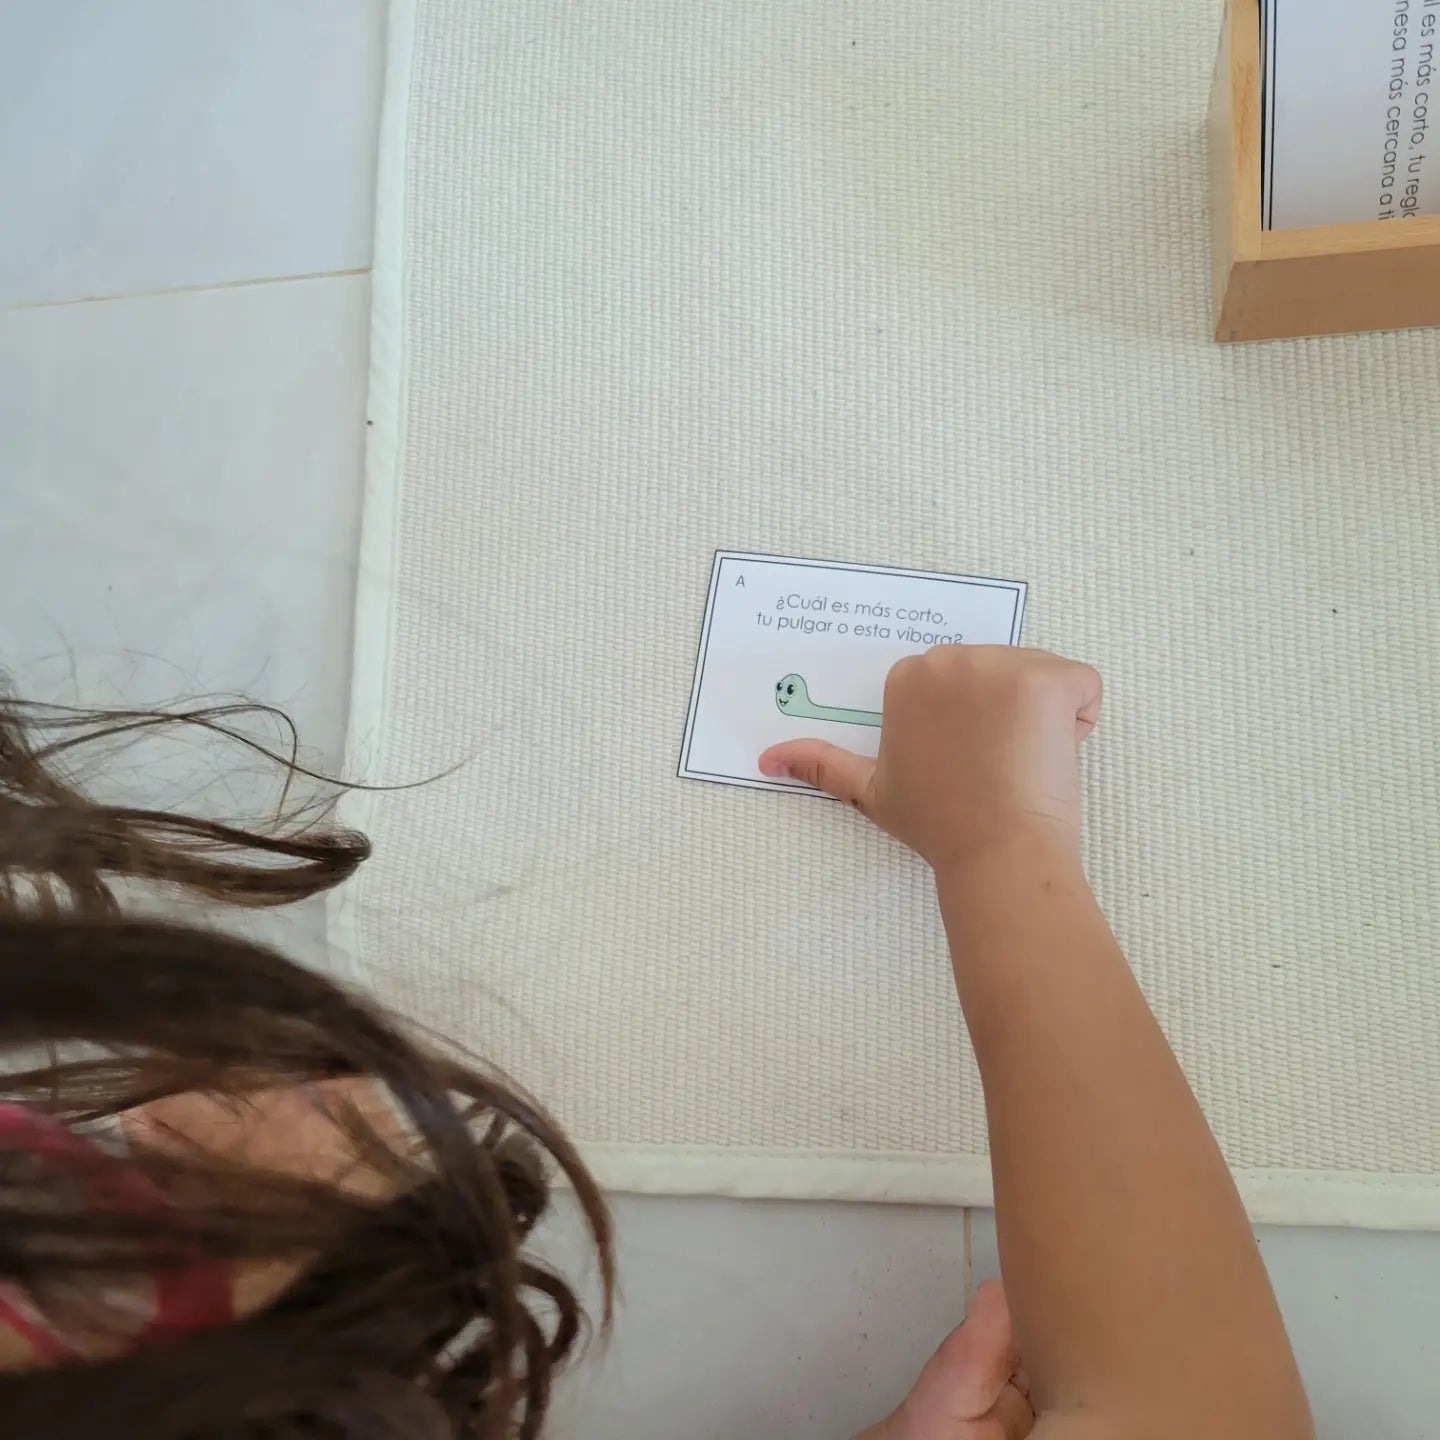 Medición Montessori: Actividades de Medición (length, height, width measurement activities) - montessorikiwi